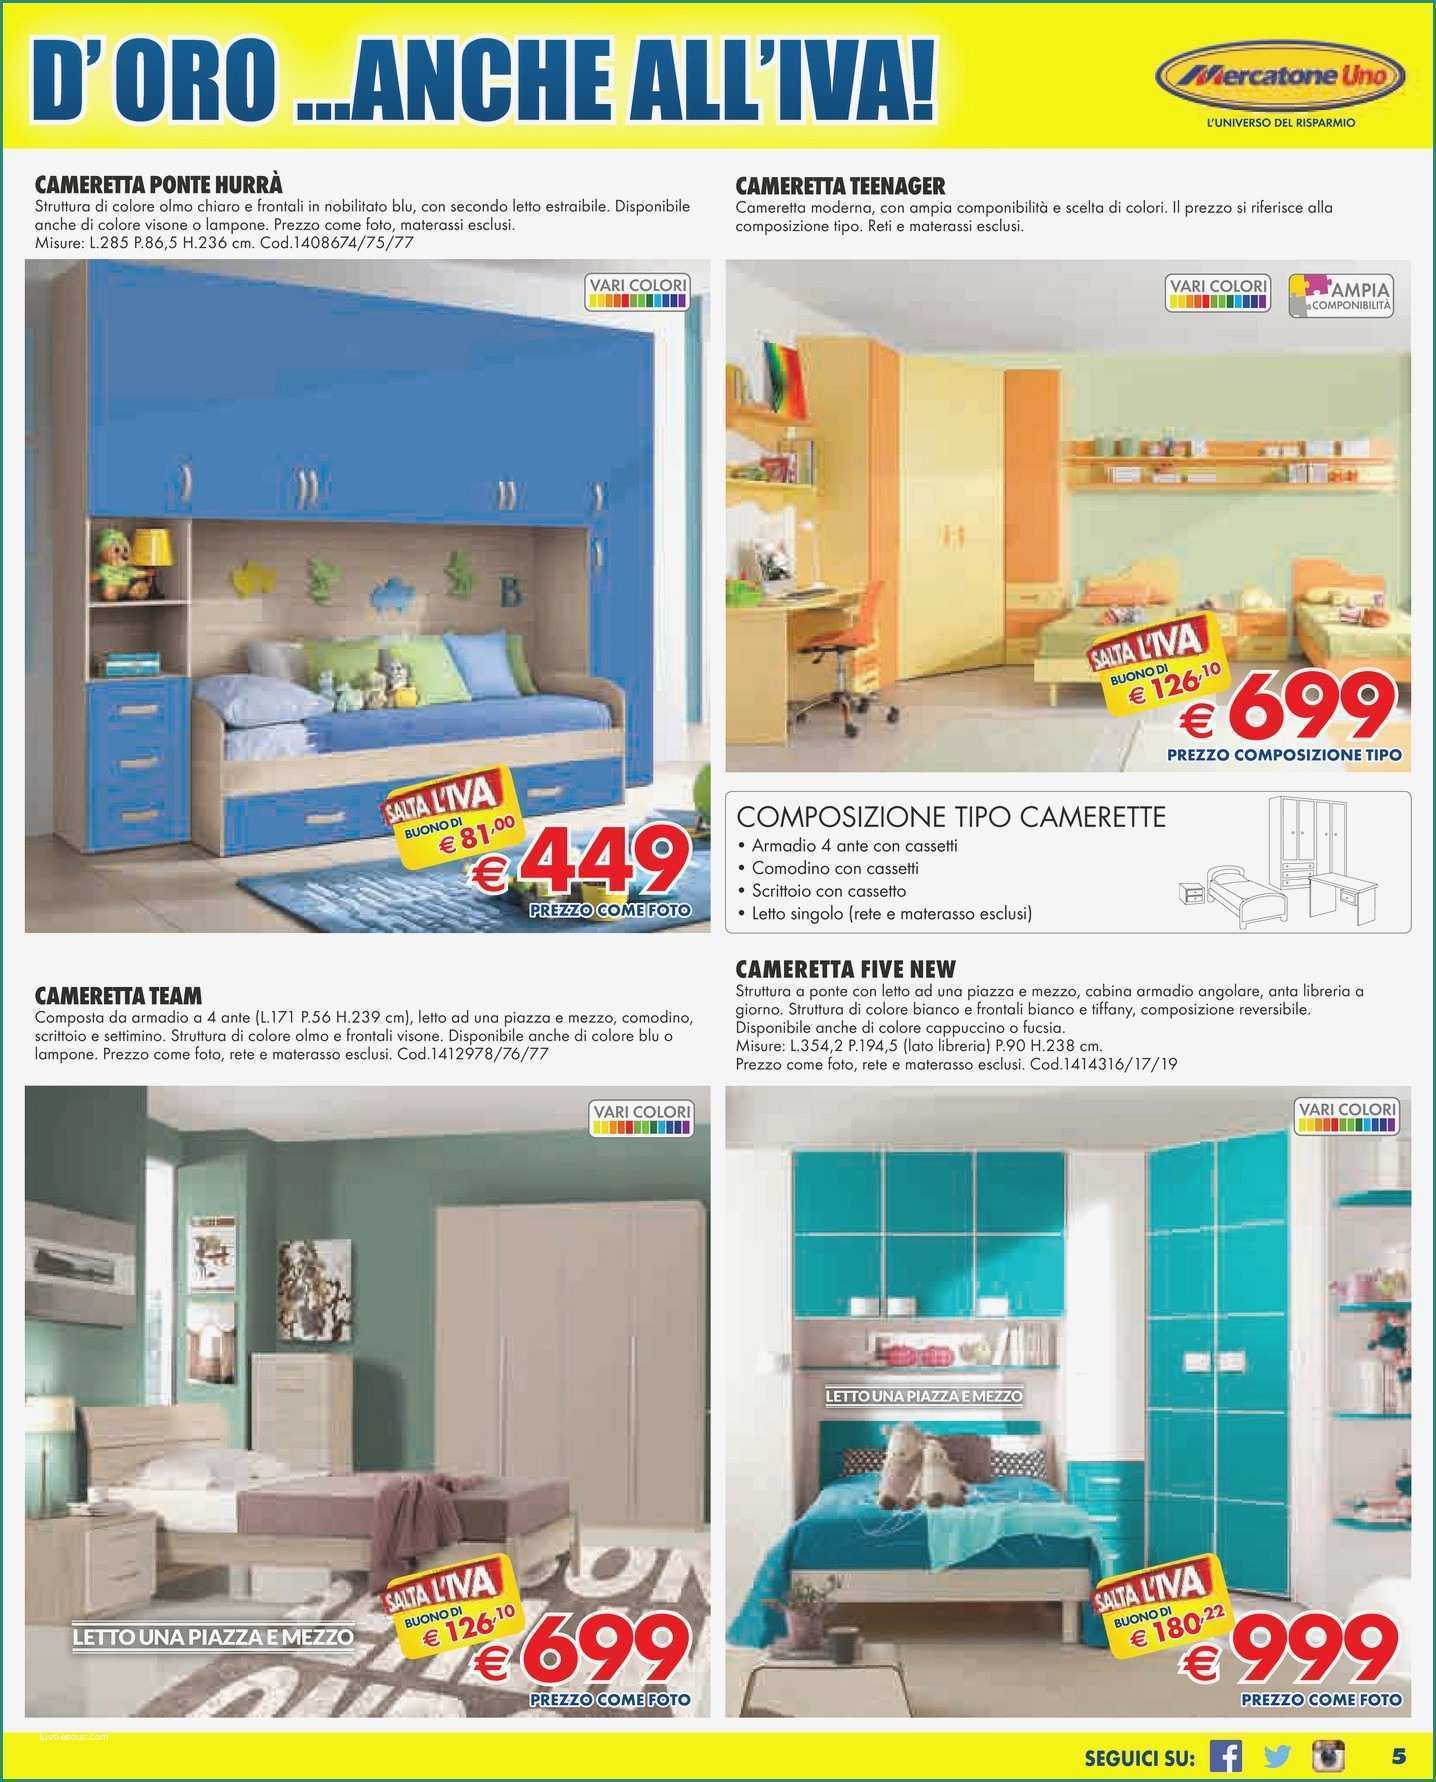 Armadietti Metallici Ikea E 52 Collezione Armadio Ad Angolo Mercatone Uno – Design Per La Casa